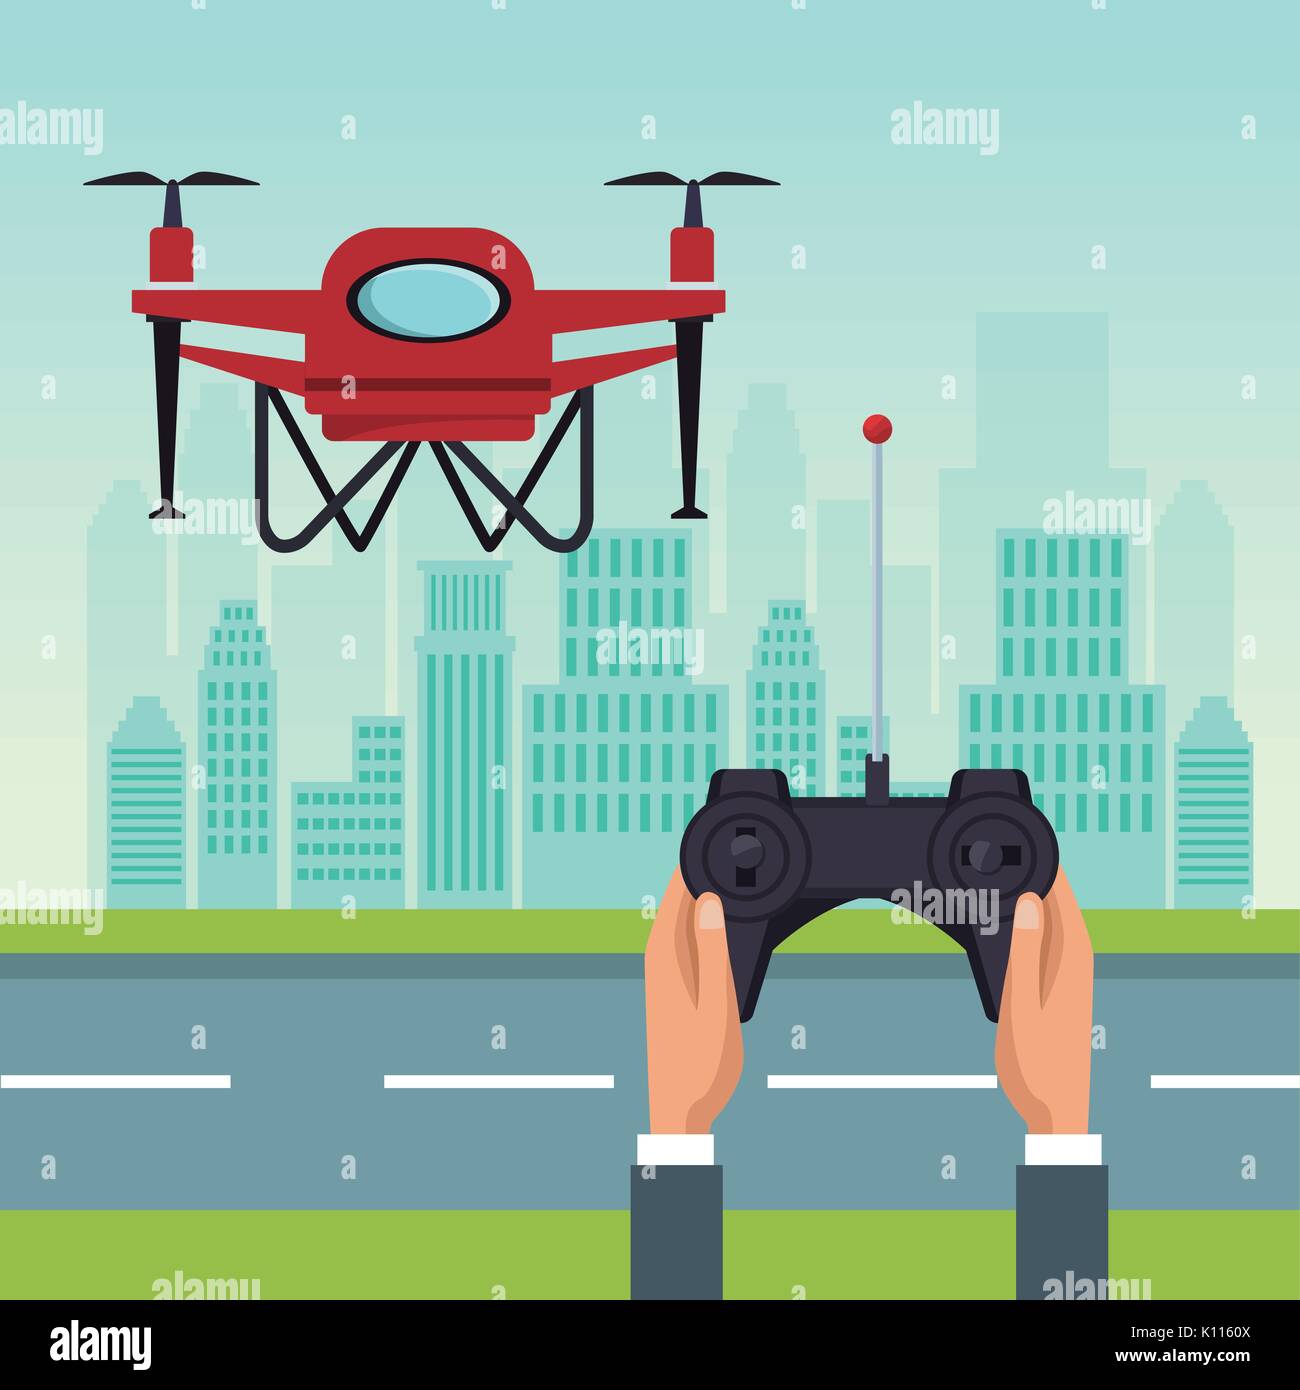 Paysage ciel avec des bâtiments et scène de rue avec des gens traiter avec commande à distance de drones rouge avec deux hélice flying Illustration de Vecteur